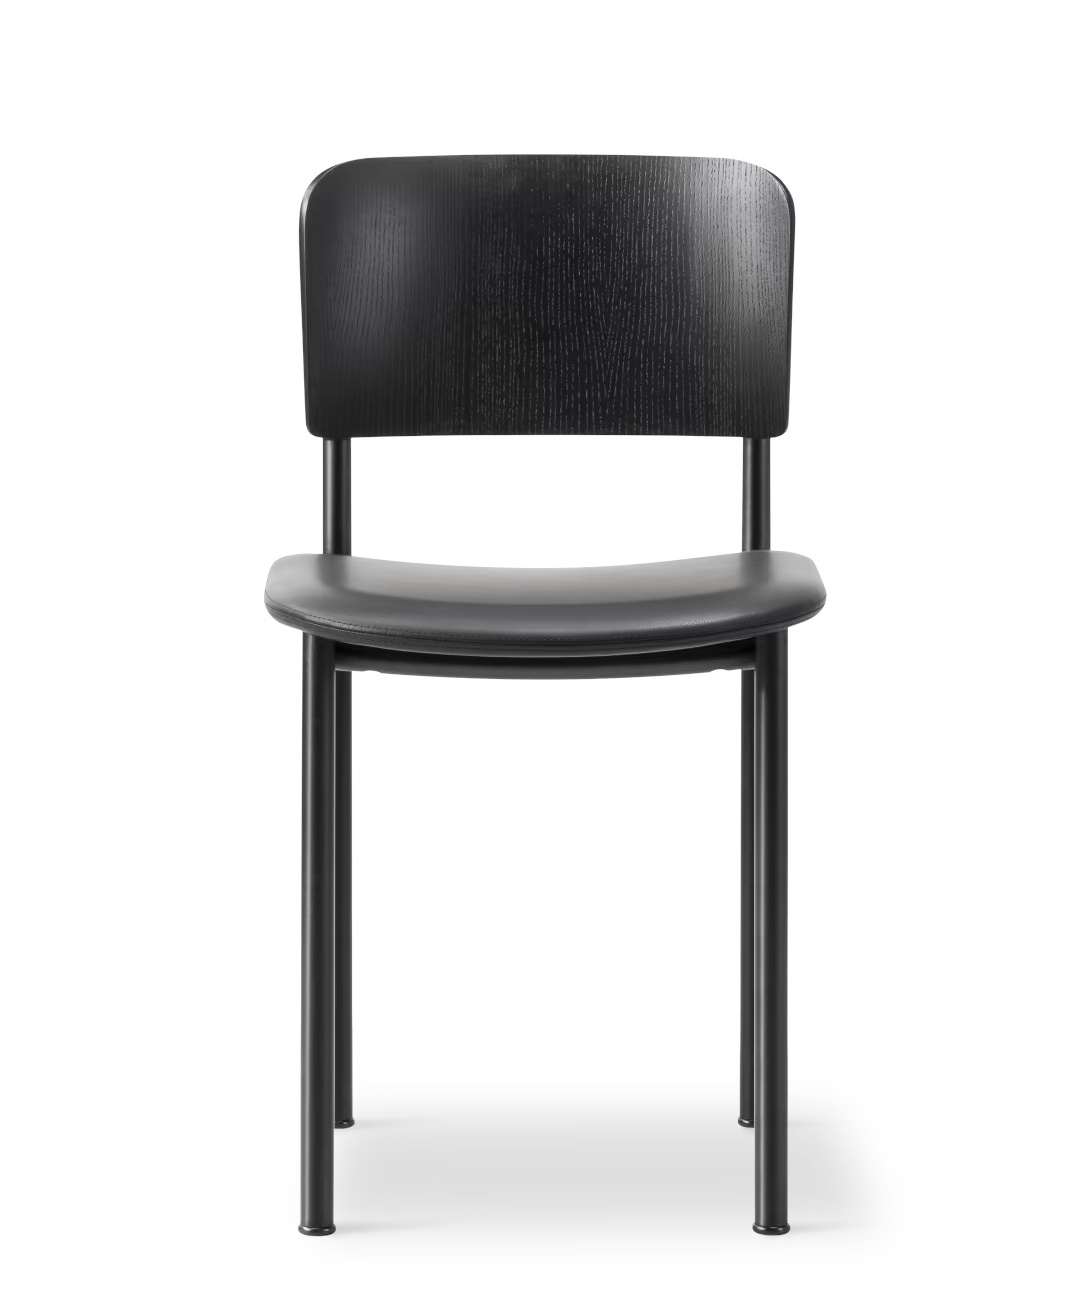 Plan Chair Sitz gepolstert, esche schwarz / leder omni 301 schwarz